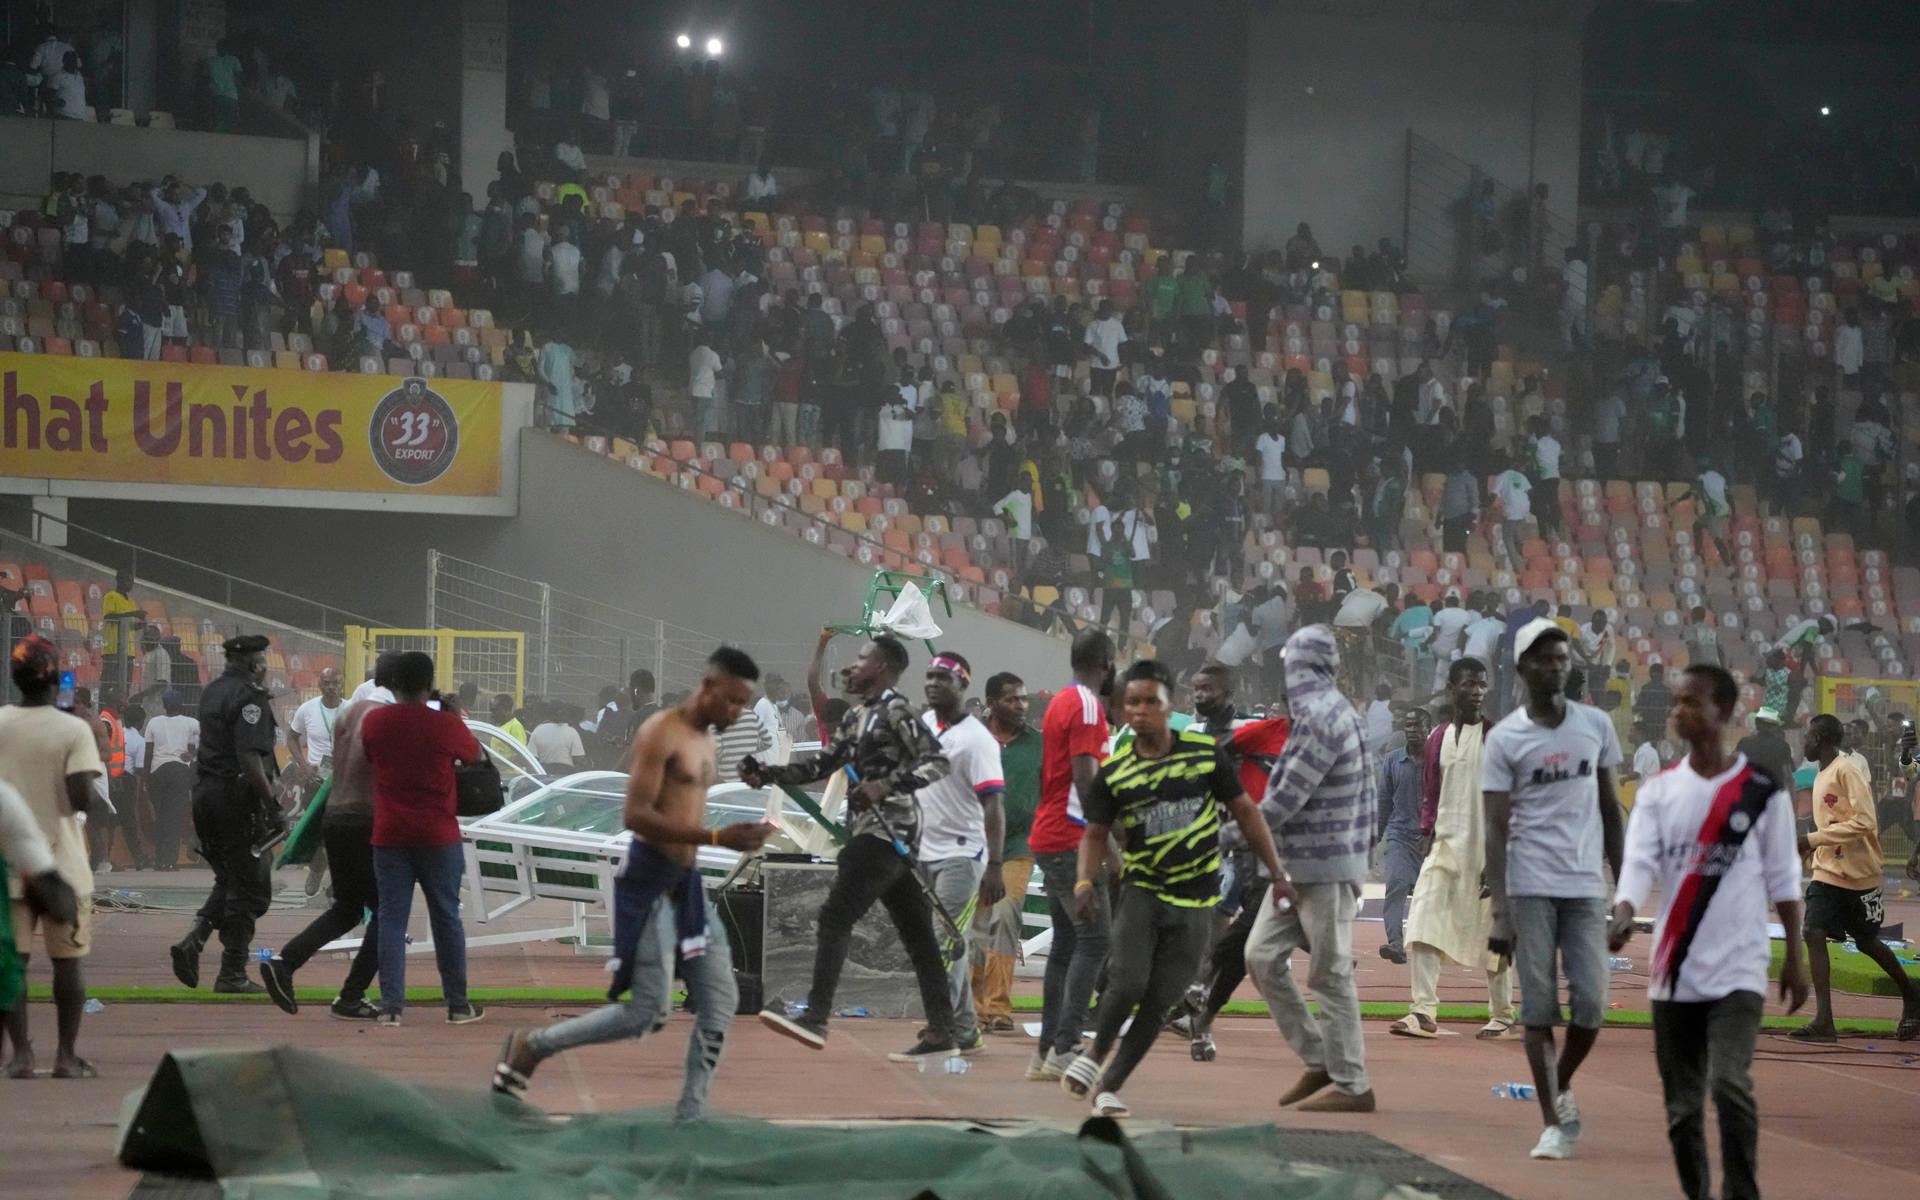 Anledningen var att nigerianska fans stormade planen efter matchen.